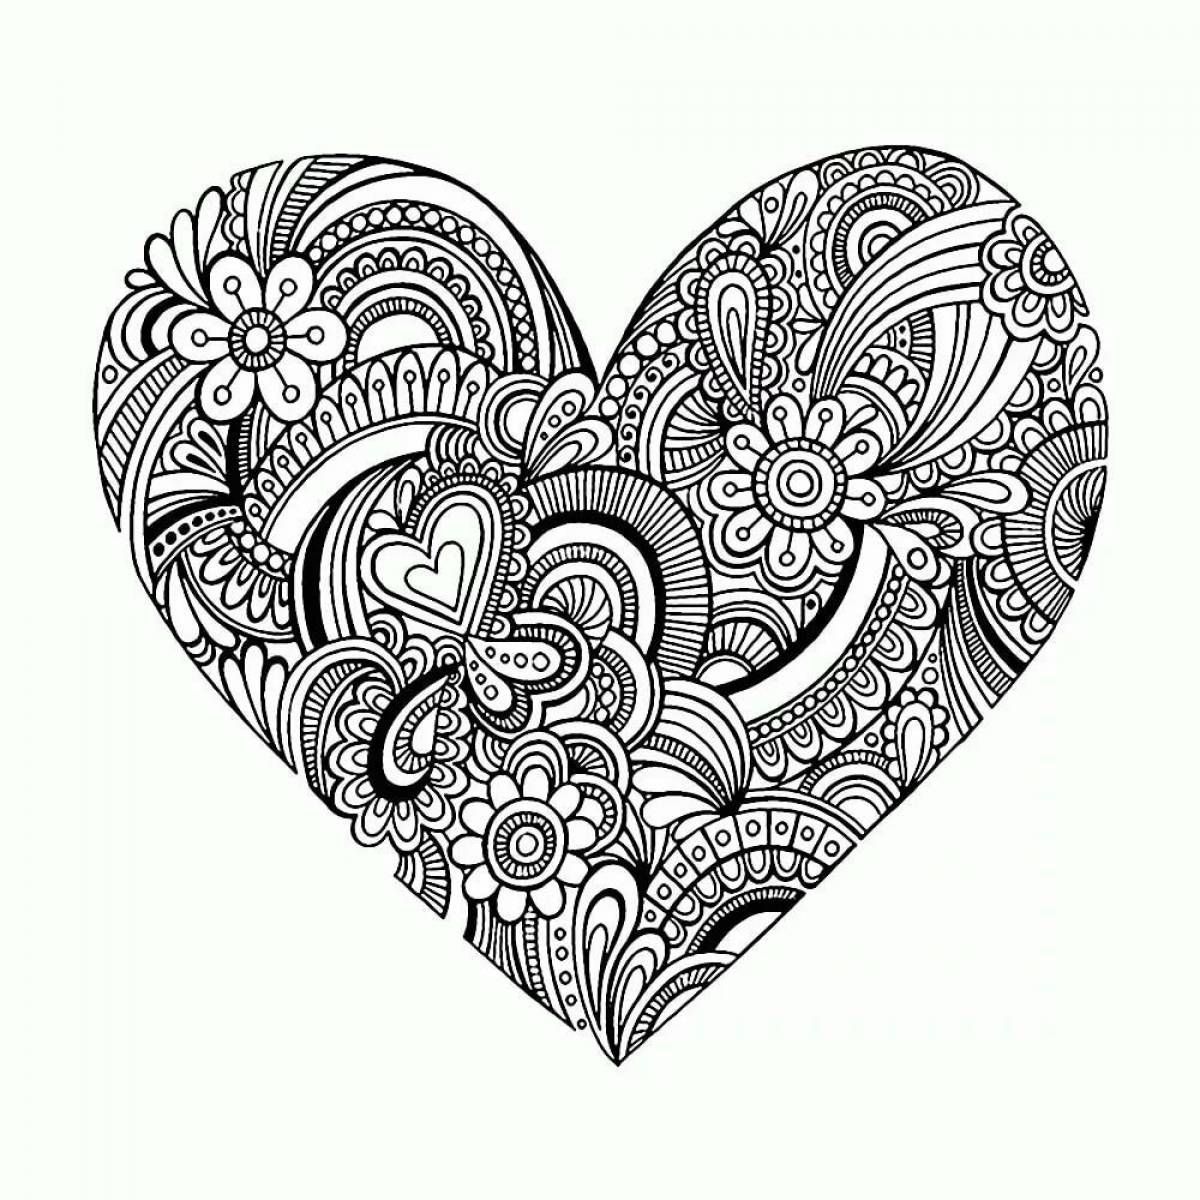 Fun intricate heart coloring